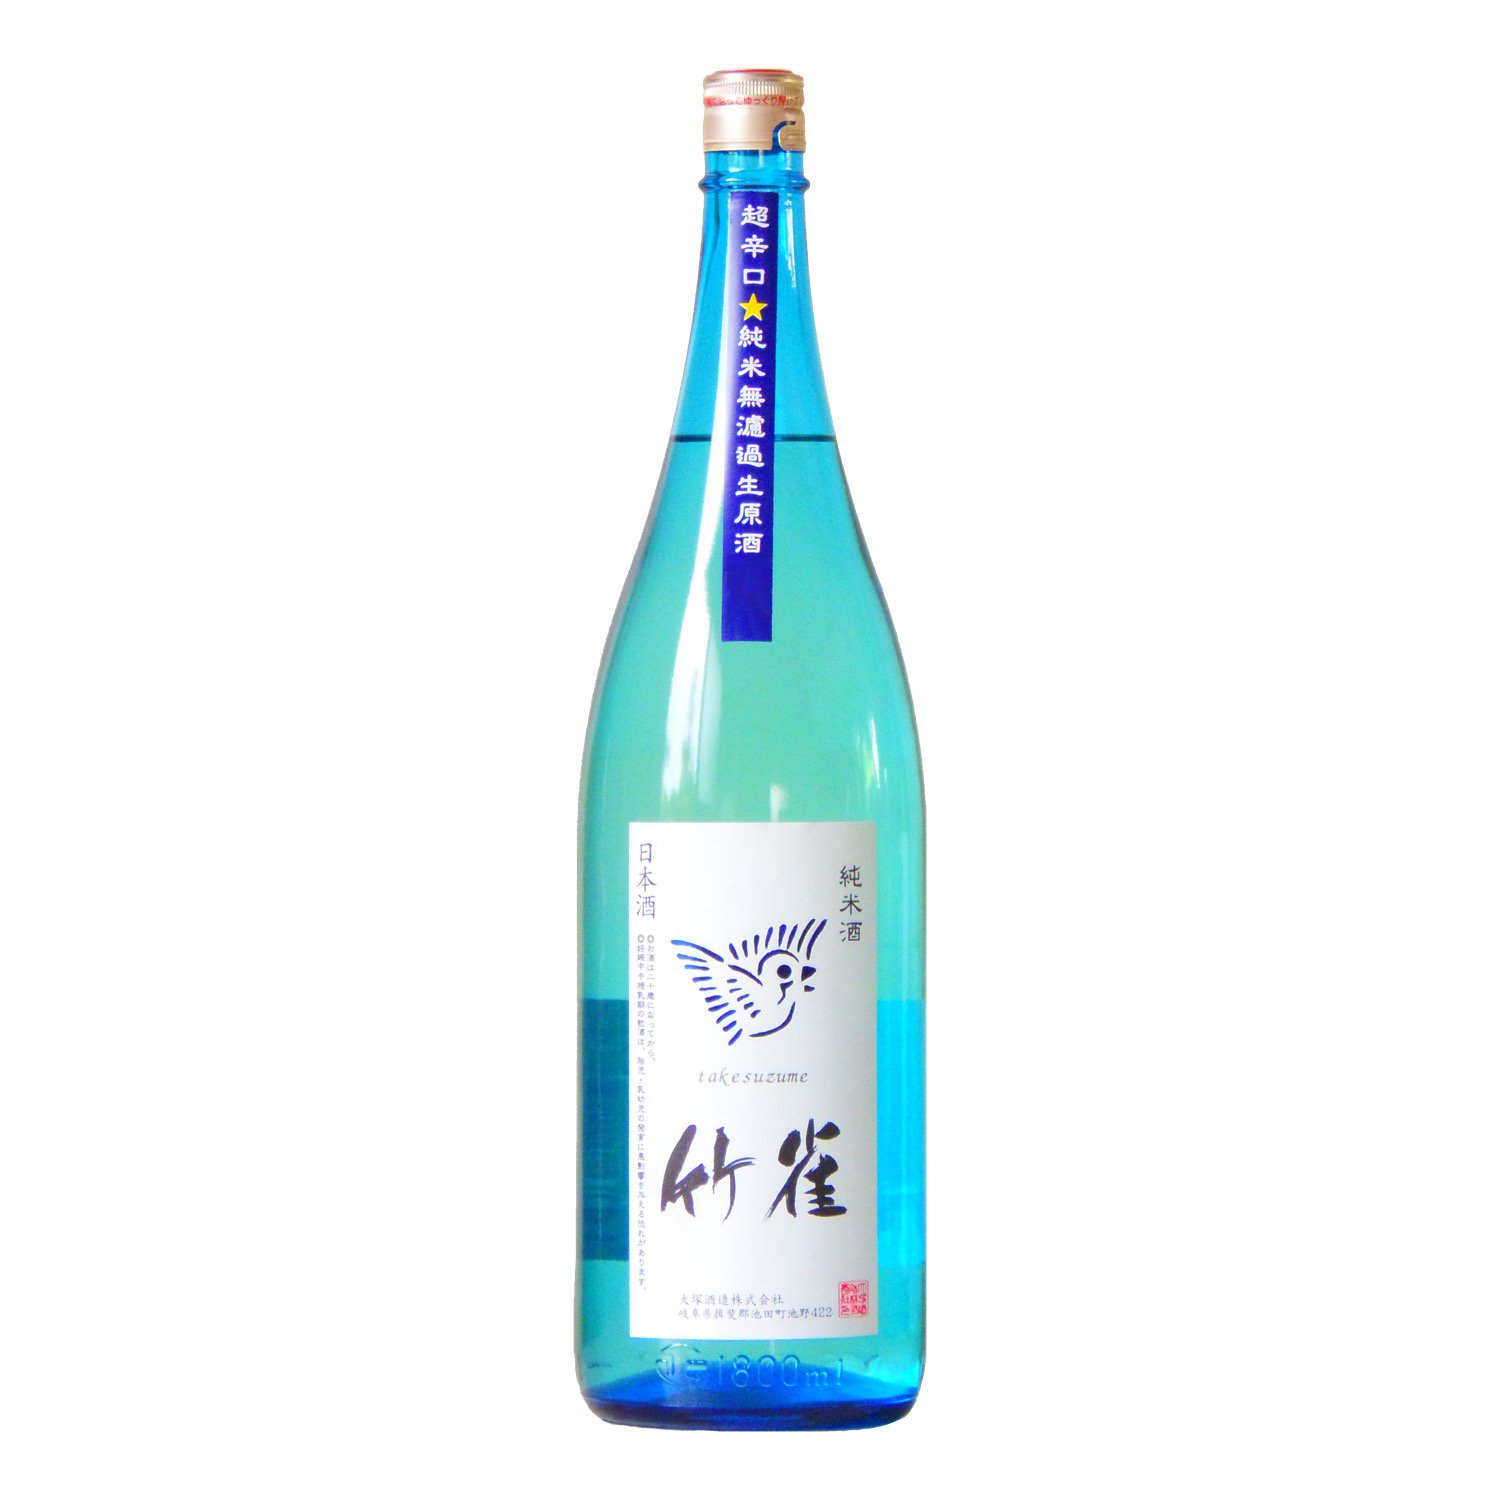 竹雀 純米 超辛口 生 Blue Sky Bottle 1800ml